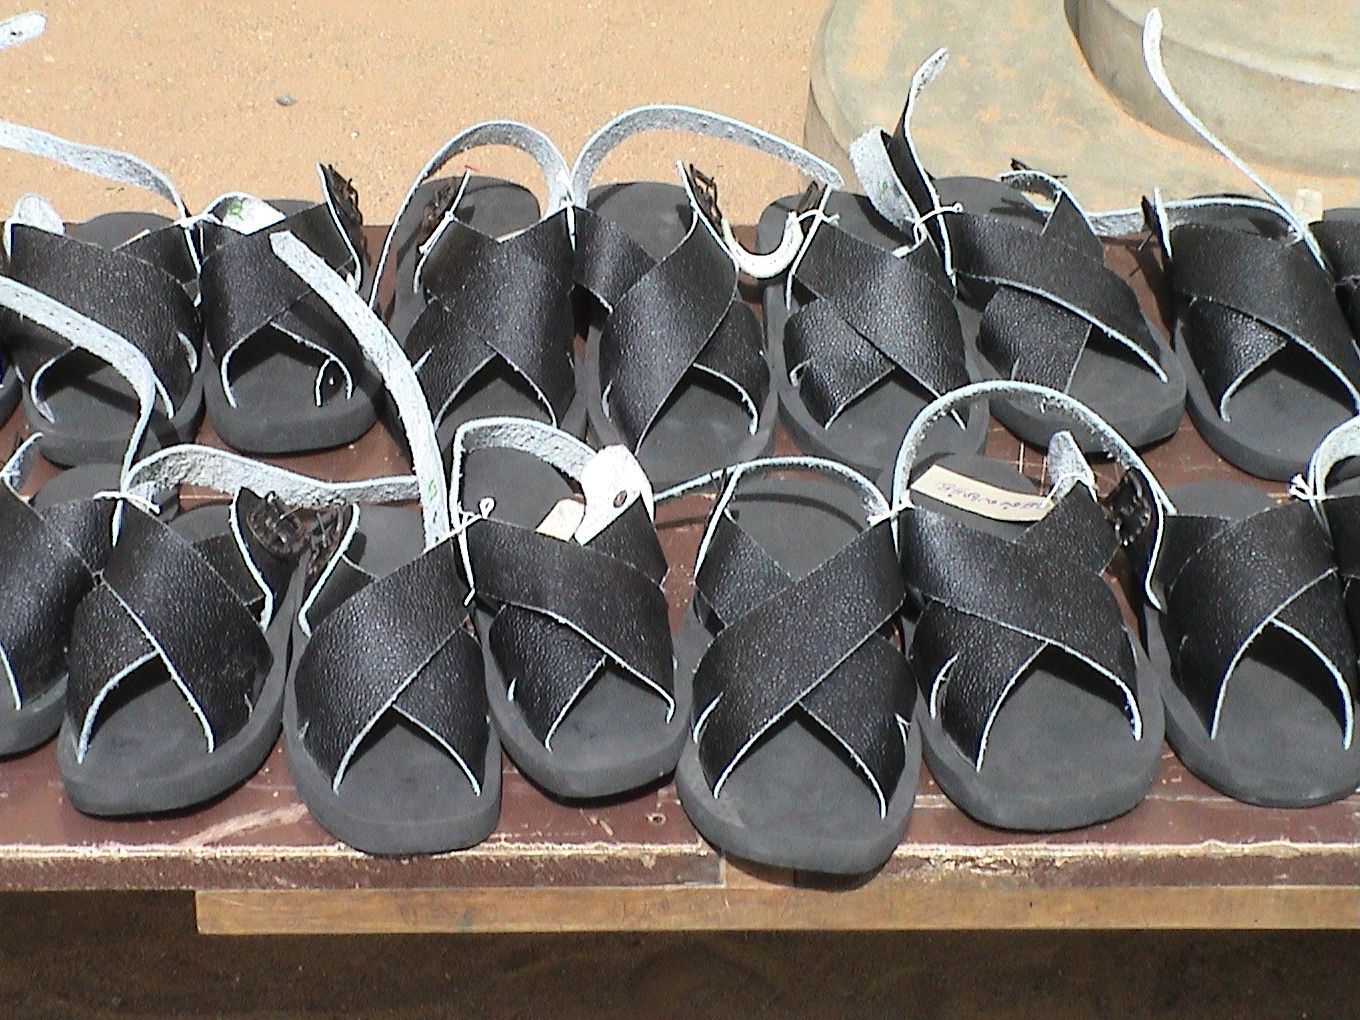 Shoes for Leprosy Victim - IGL World